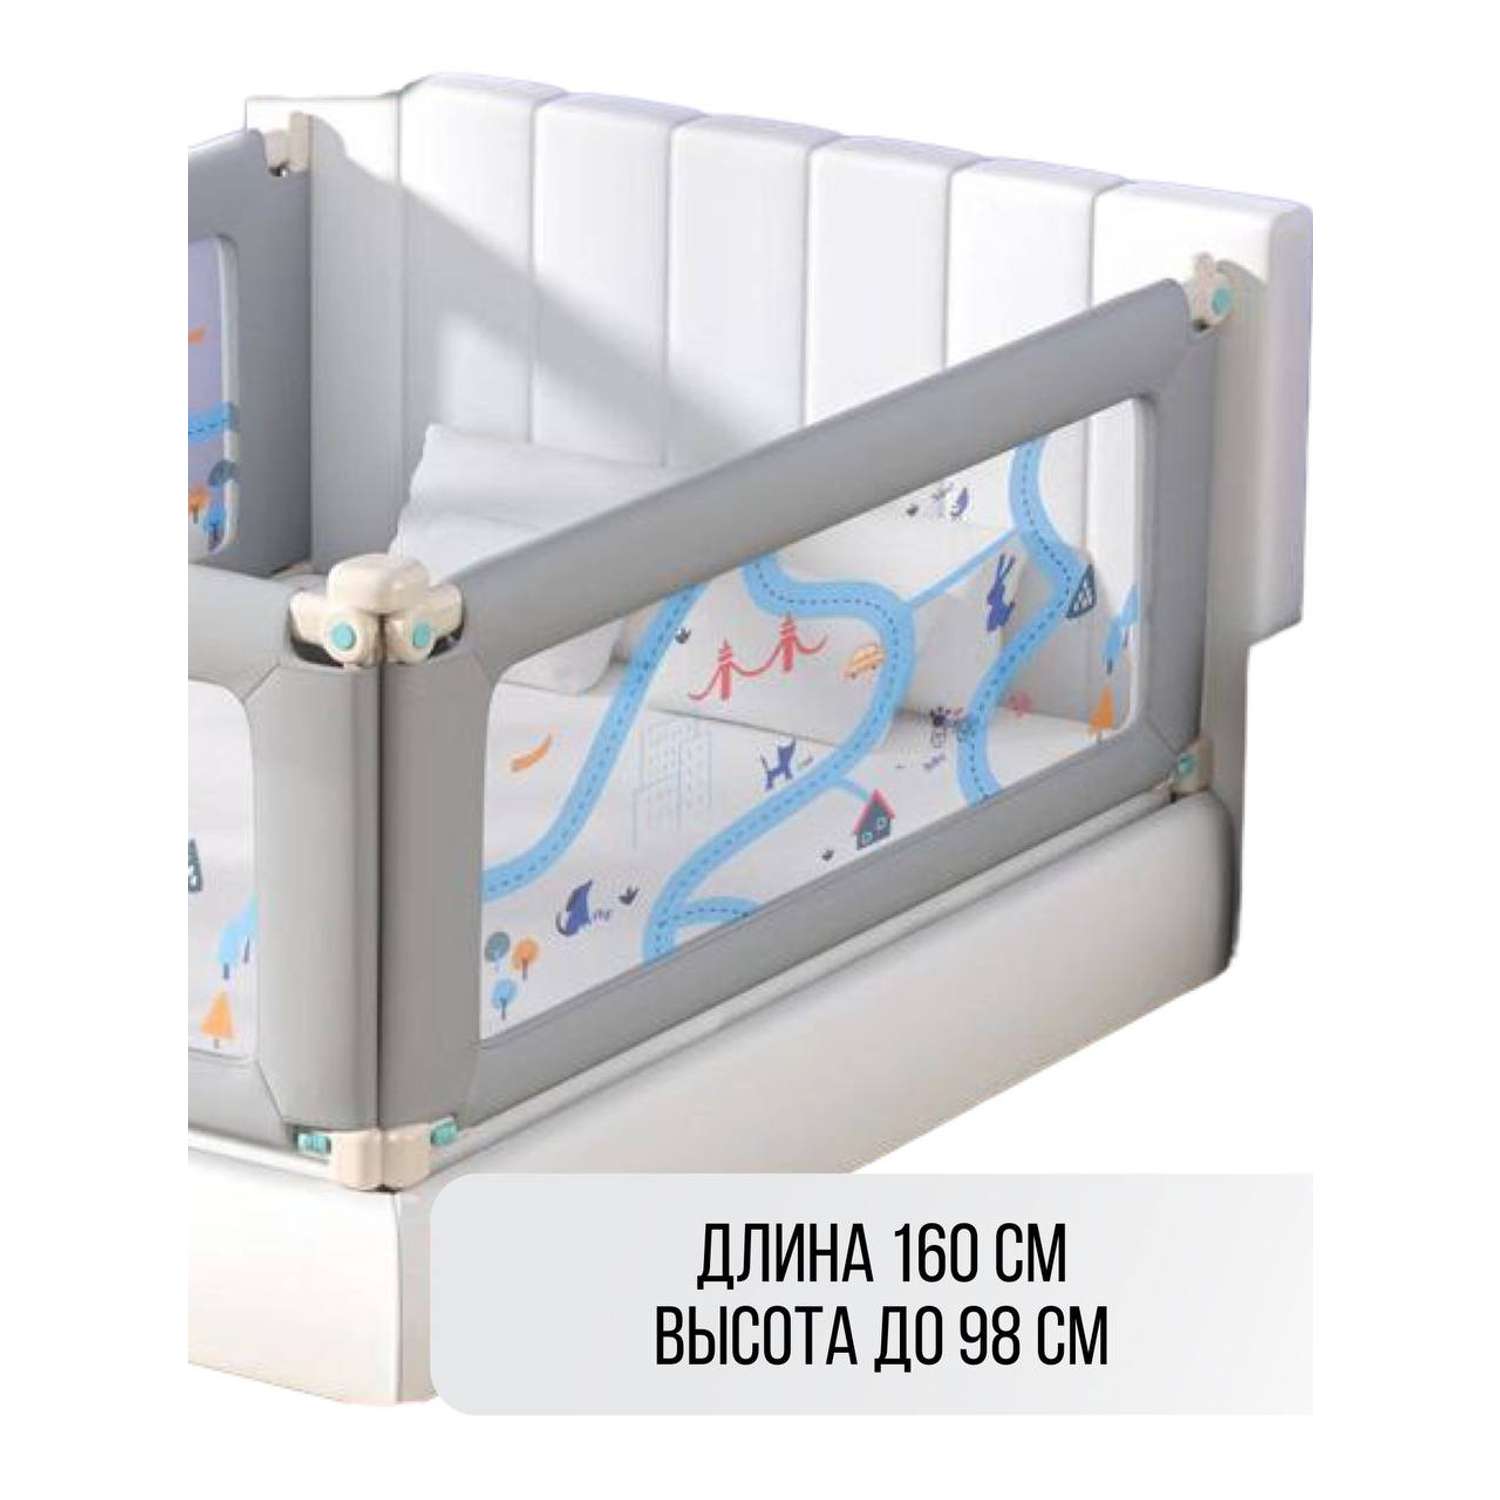 Барьер для кровати Safely and Soft Premium длиной 160см серый на одну сторону кровати - фото 1